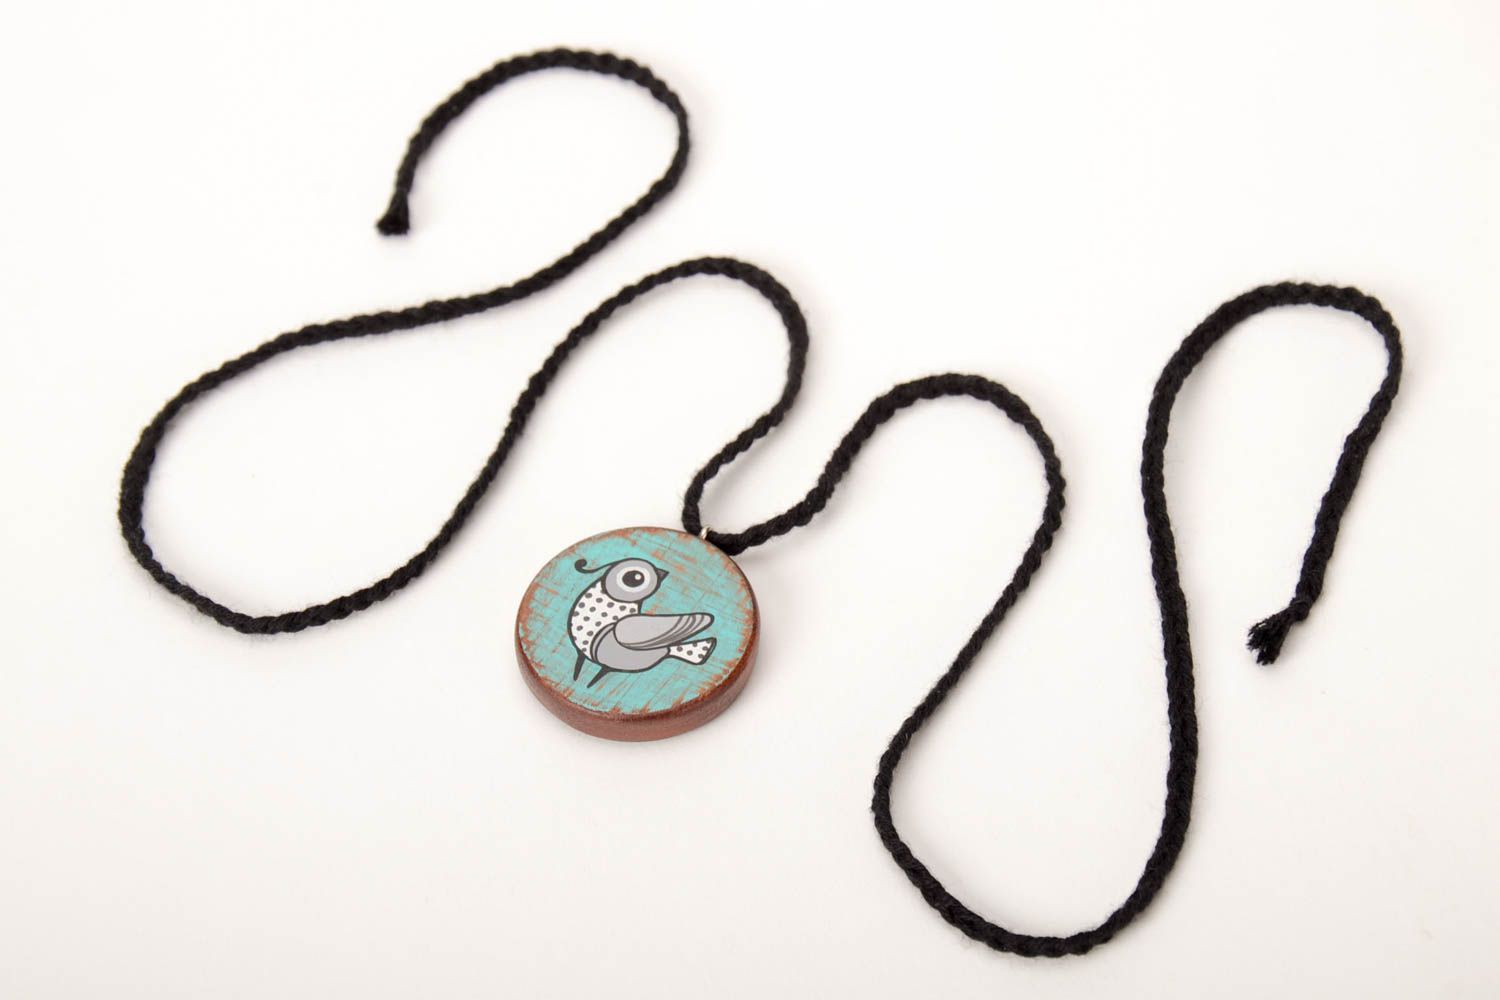 Handmade pendant designer pendant unusual gift wooden accessory gift for girl photo 5